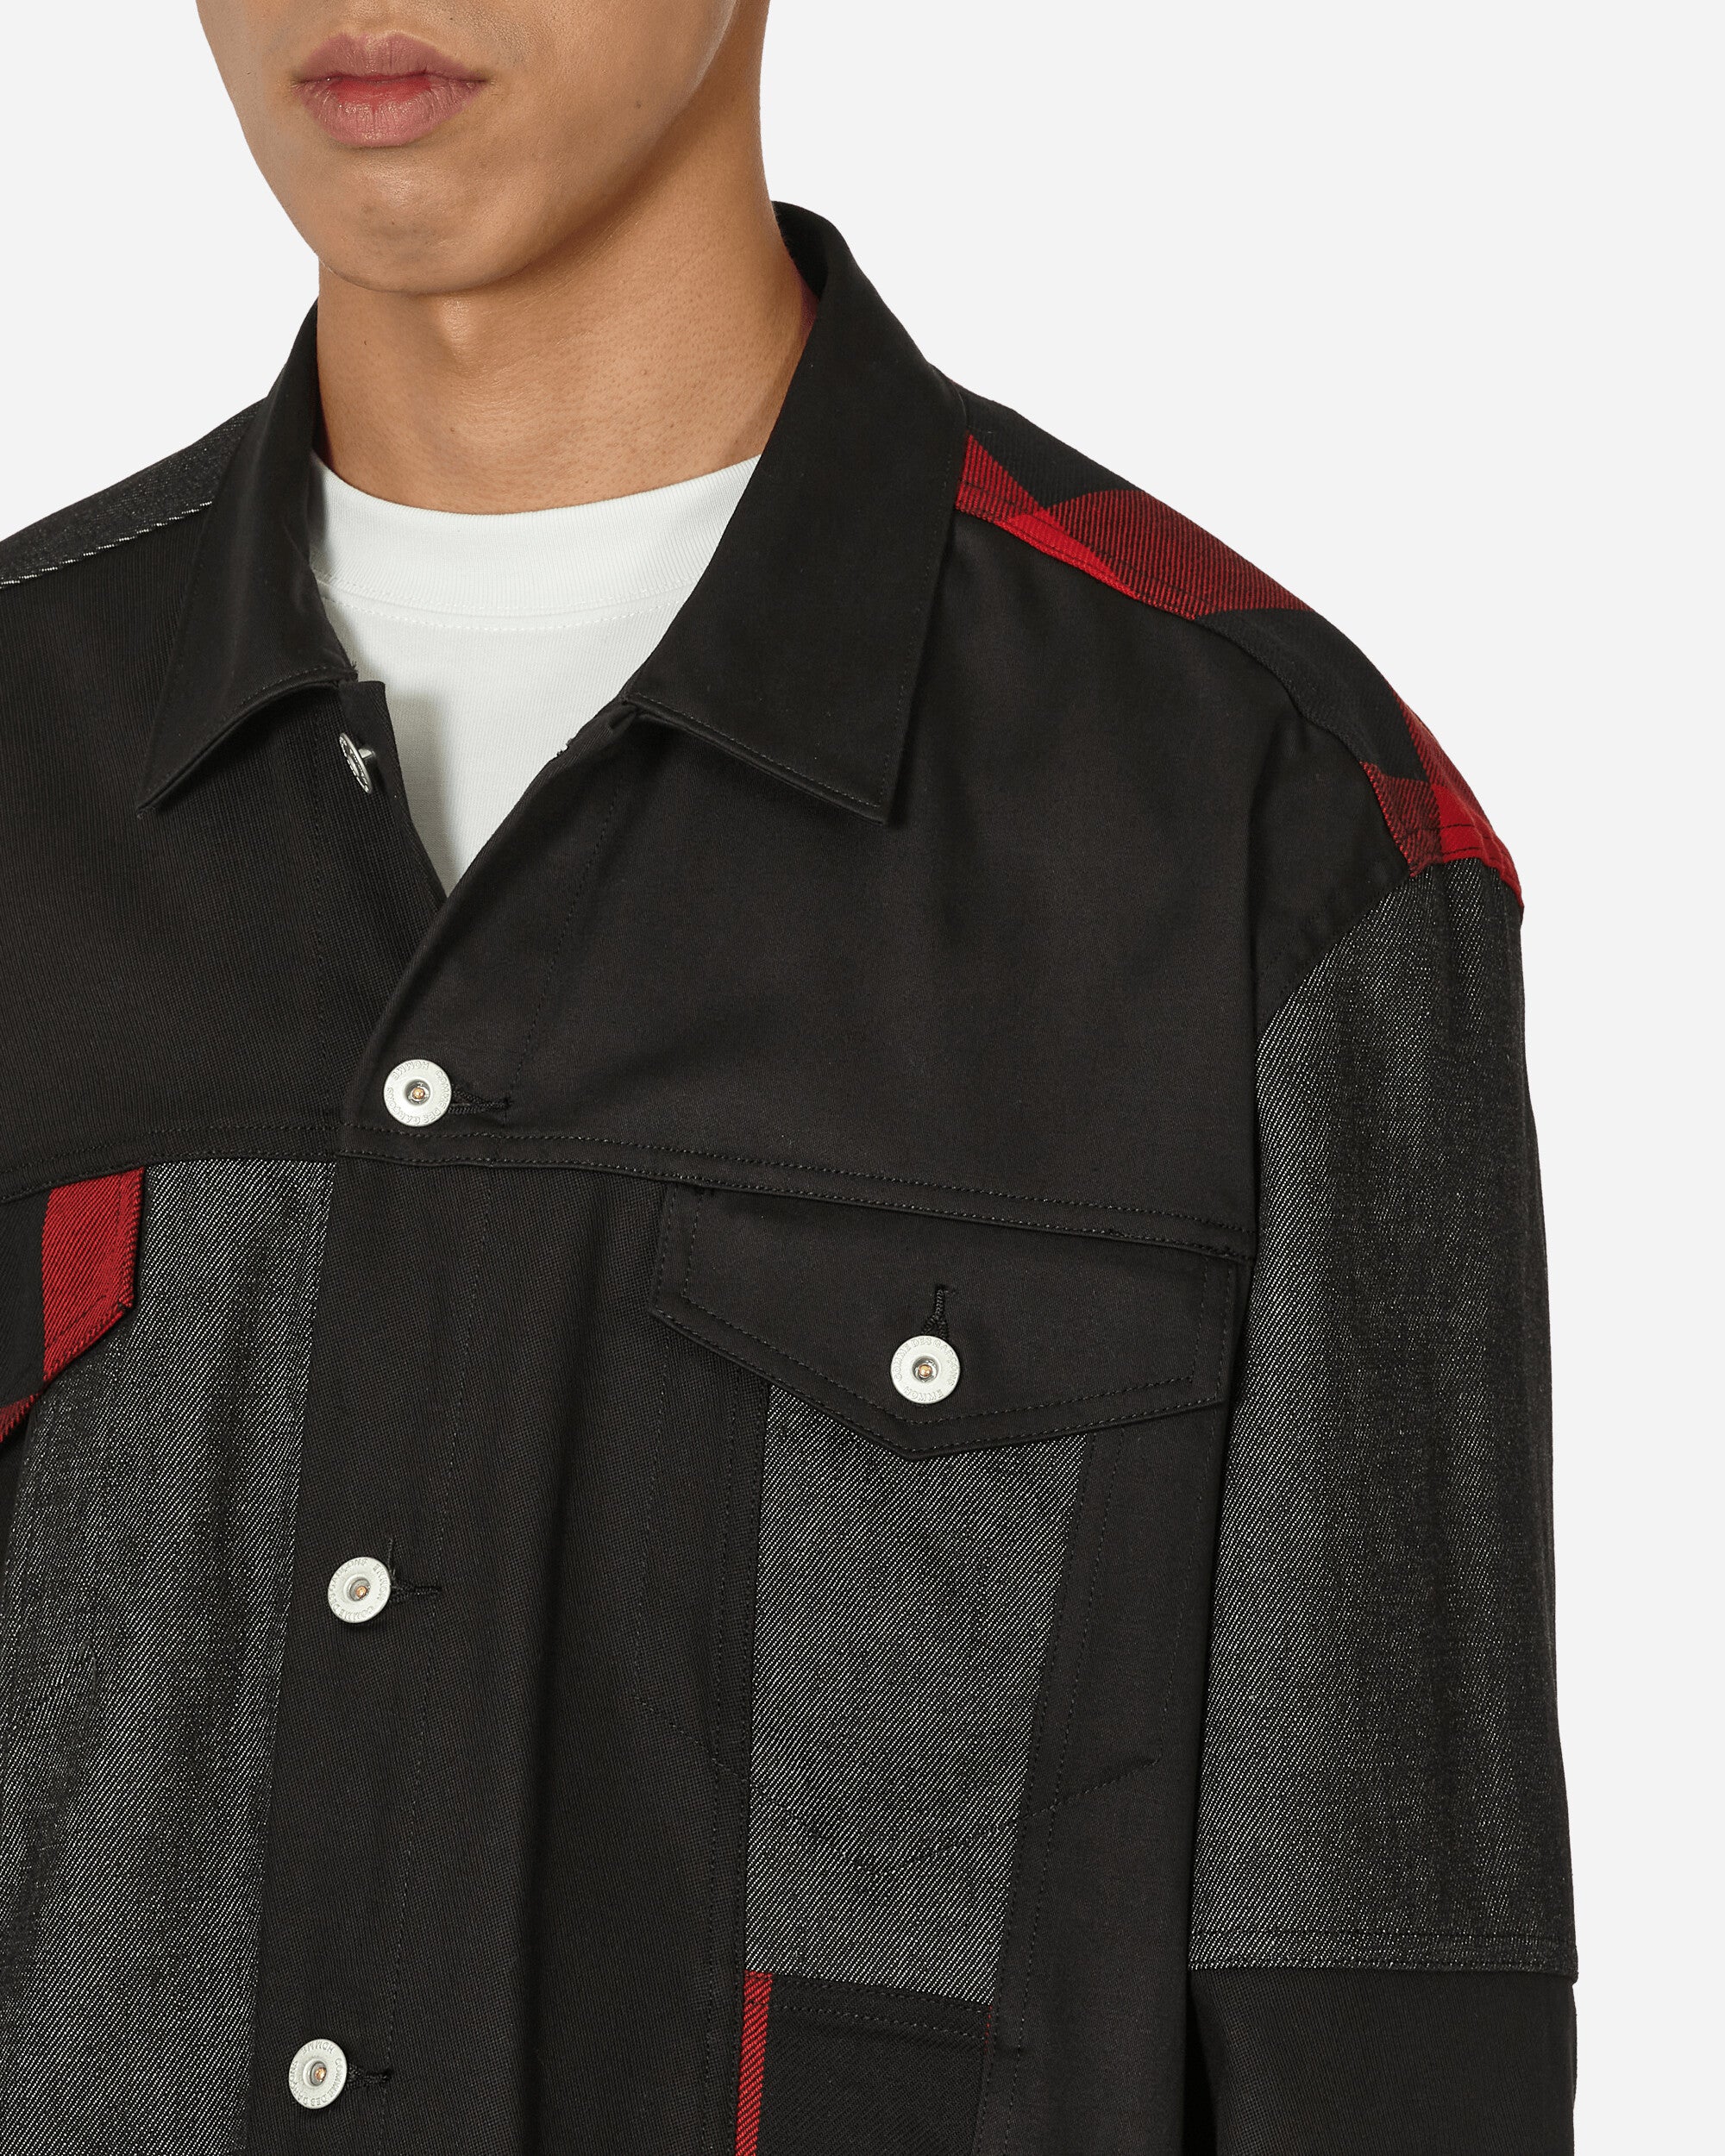 Comme Des Garçons Homme Men'S Jacket Black/Red Coats and Jackets Jackets HL-J020-W23 1